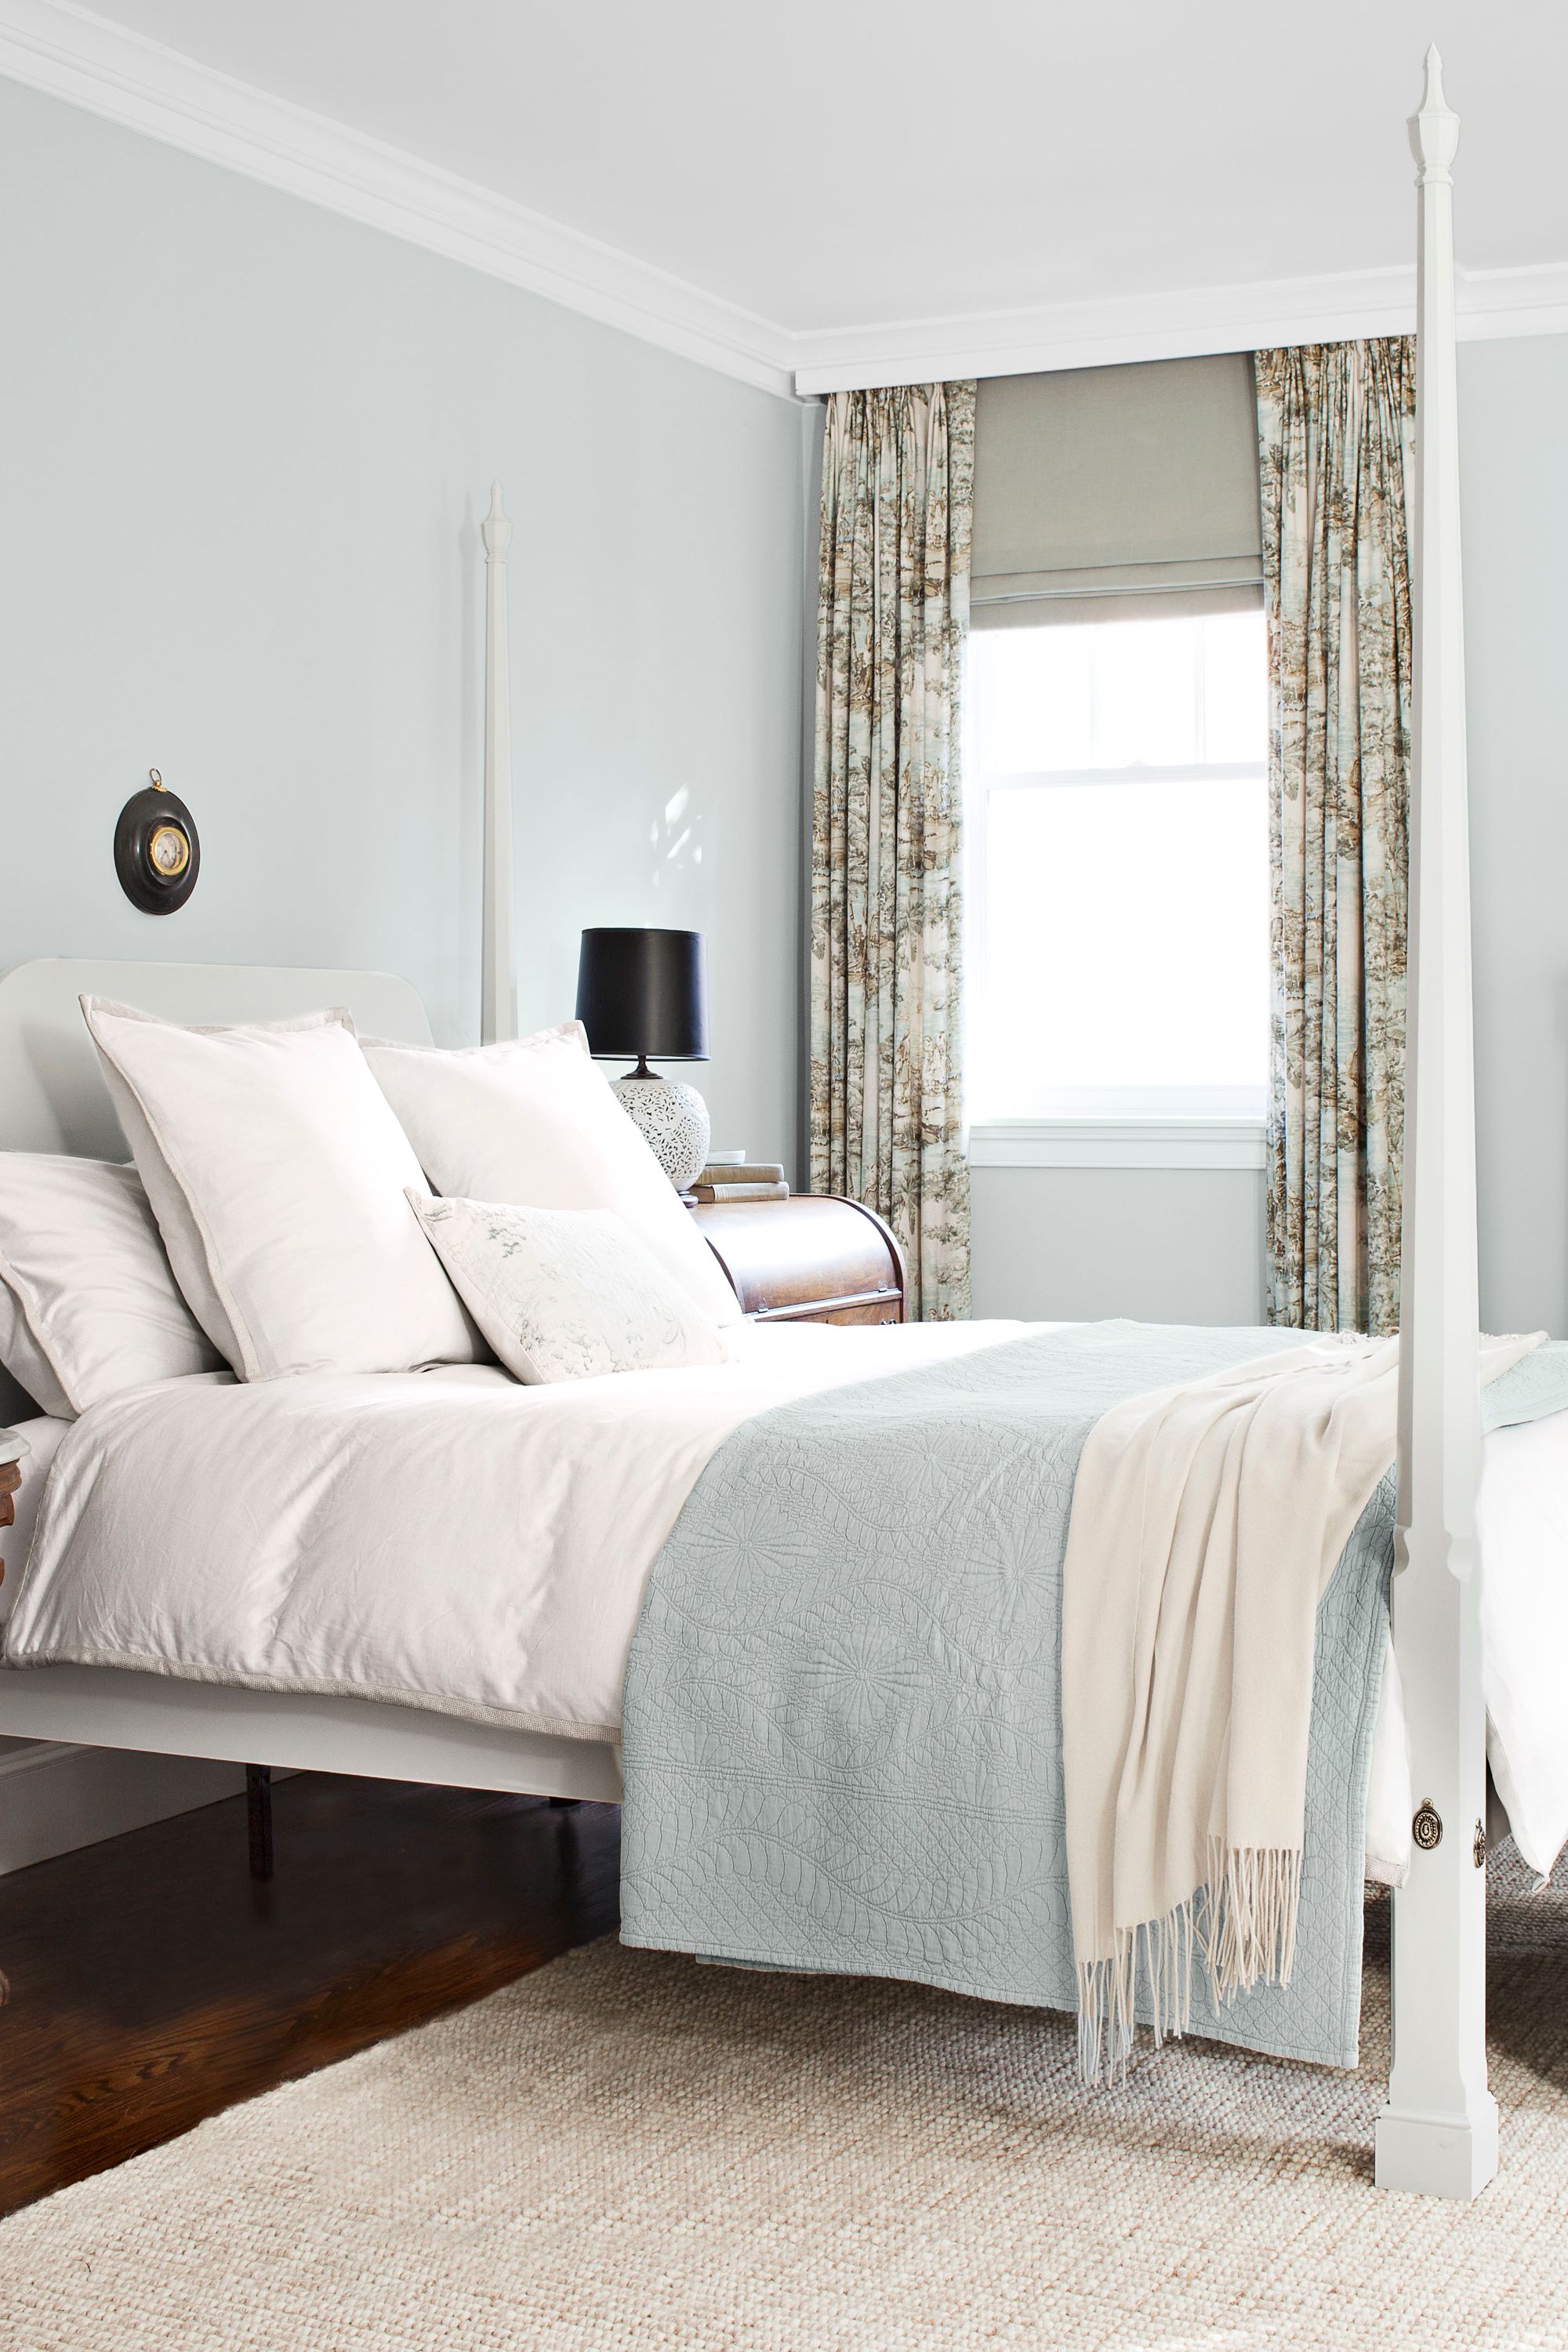 Udråbstegn marked forstørrelse 25 Best Blue Rooms - Decorating Ideas for Blue Walls and Home Decor